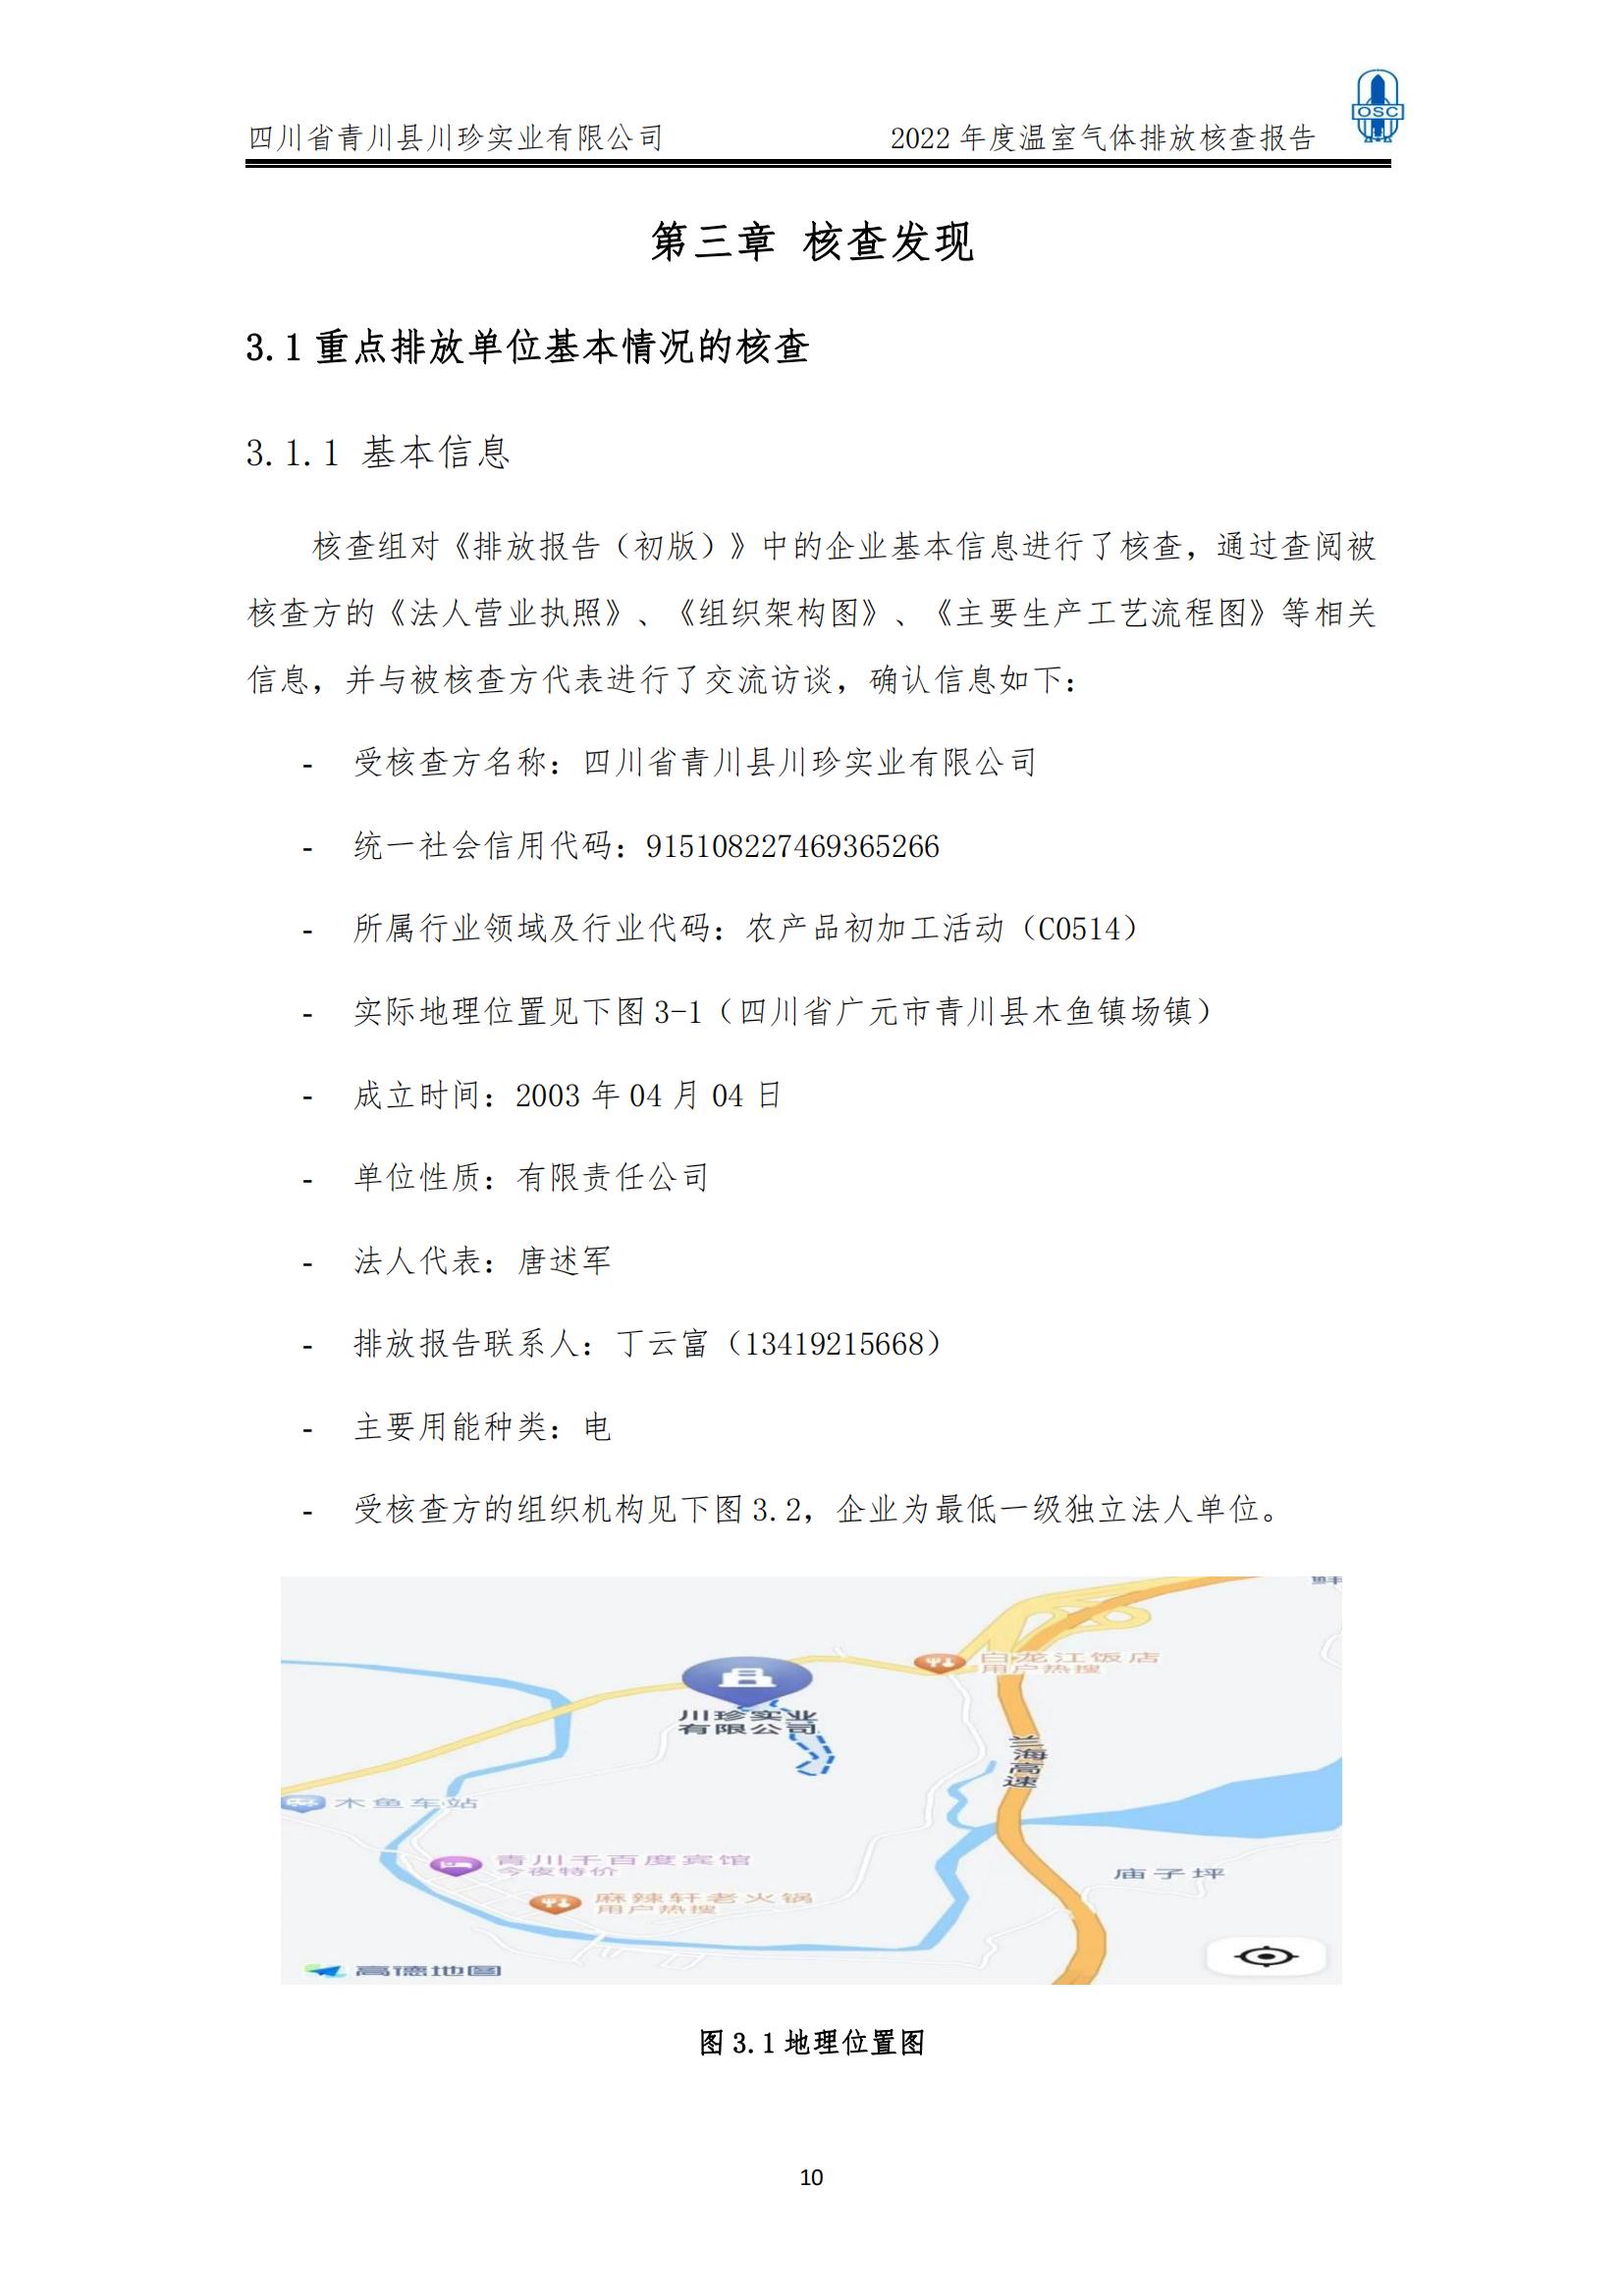 2022年度温室气体核查报告(四川省青川县川珍实业有限公司(图11)